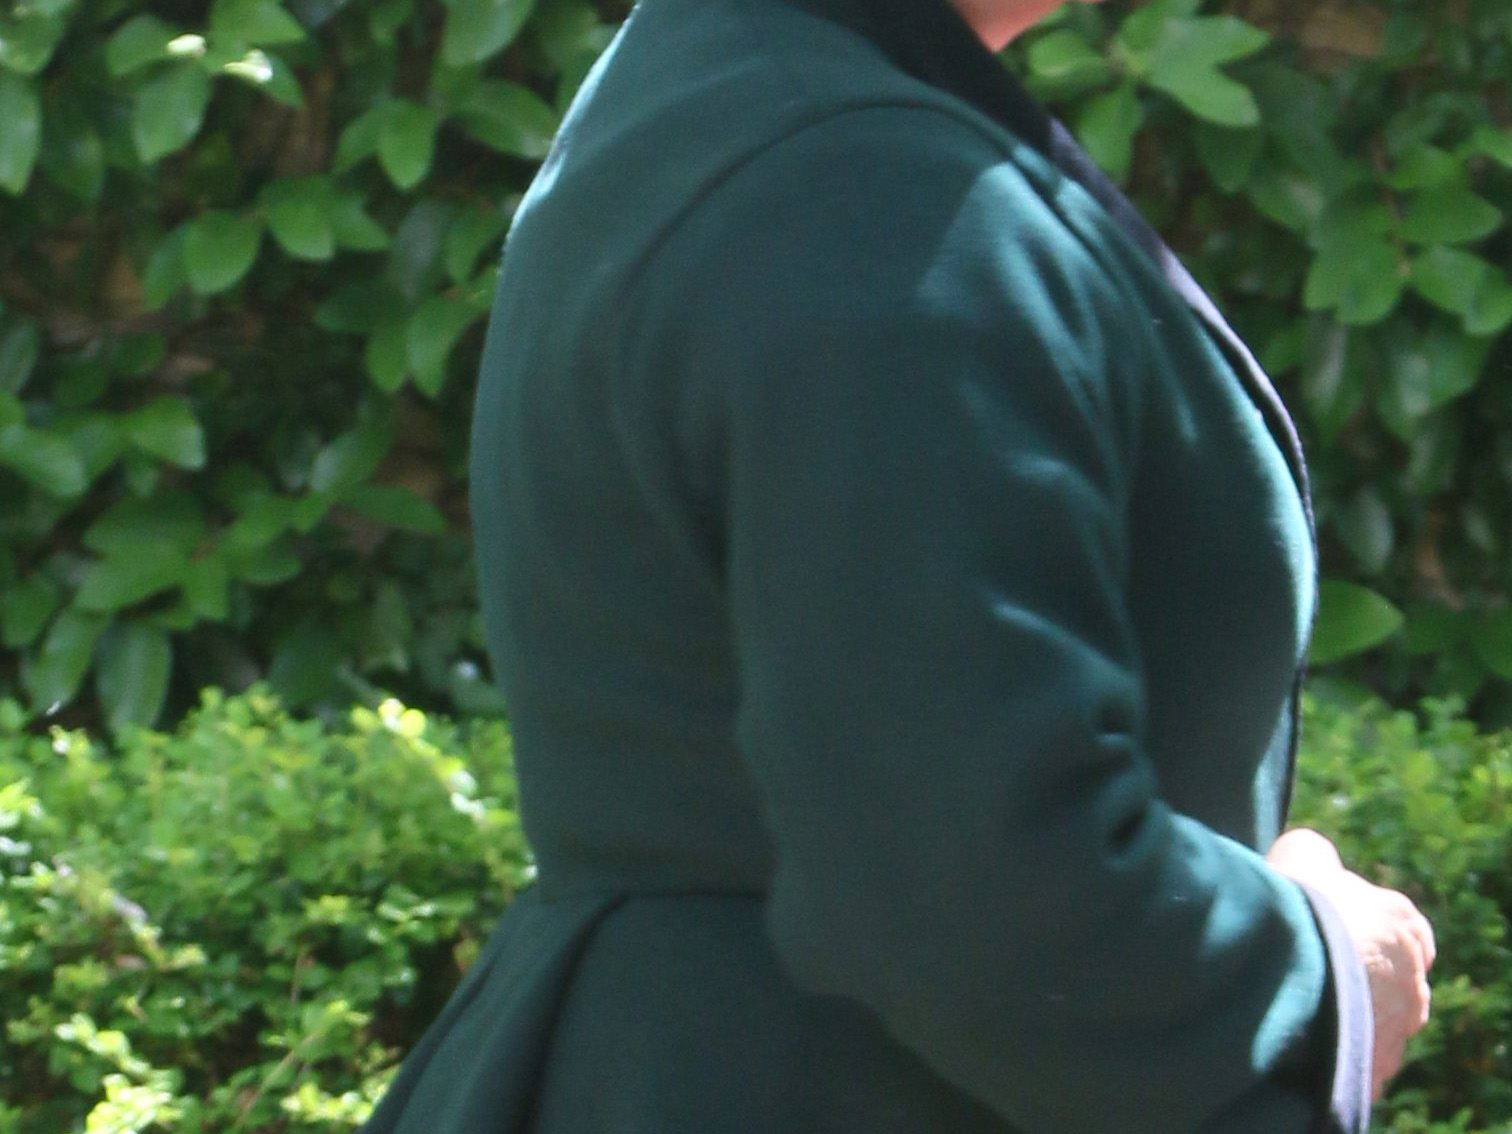 Woman's torso wearing a heavy wool jacket with back pleat